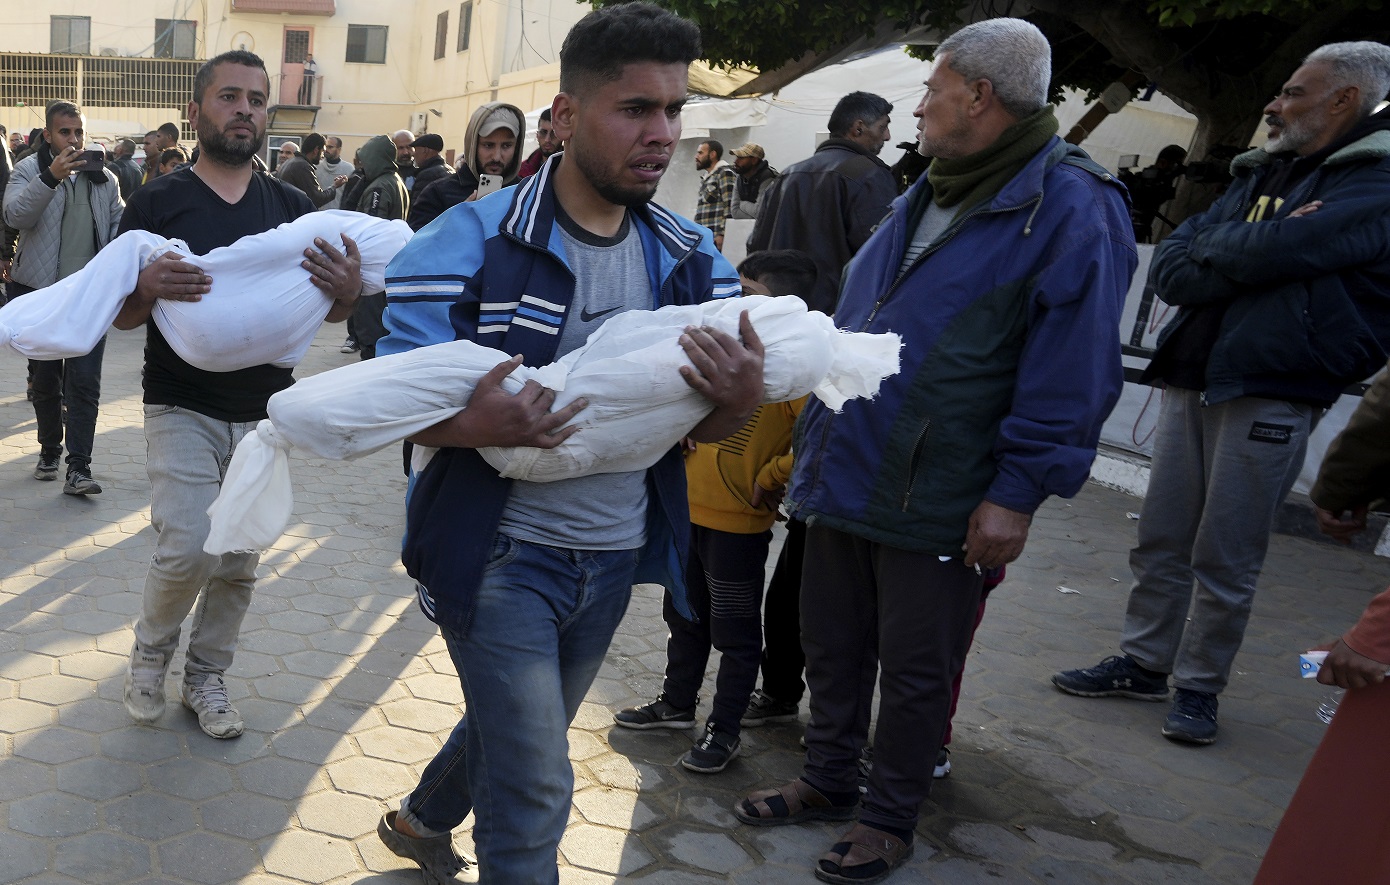 Περισσότερα παιδιά σκοτώθηκαν στη Γάζα σε 4 μήνες παρά σε 4 χρόνια συγκρούσεων σε όλο τον κόσμο